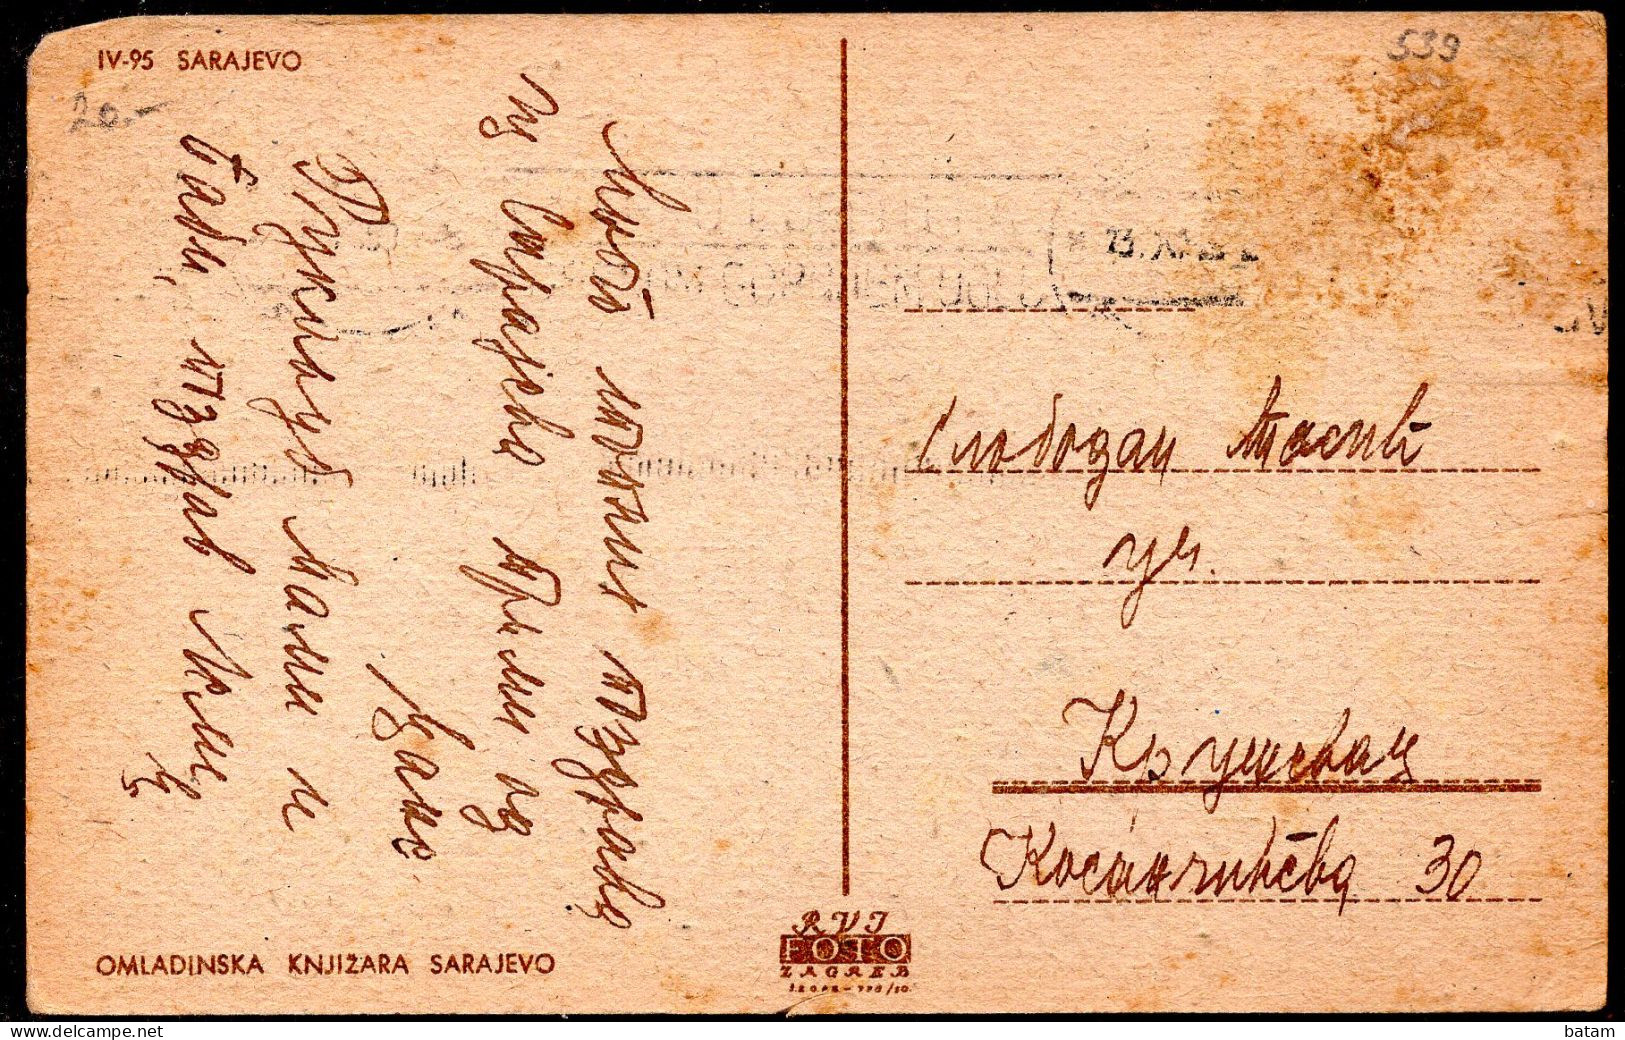 539 - Bosnia And Herzegovina - Sarajevo 1938 - Postcard - Bosnie-Herzegovine